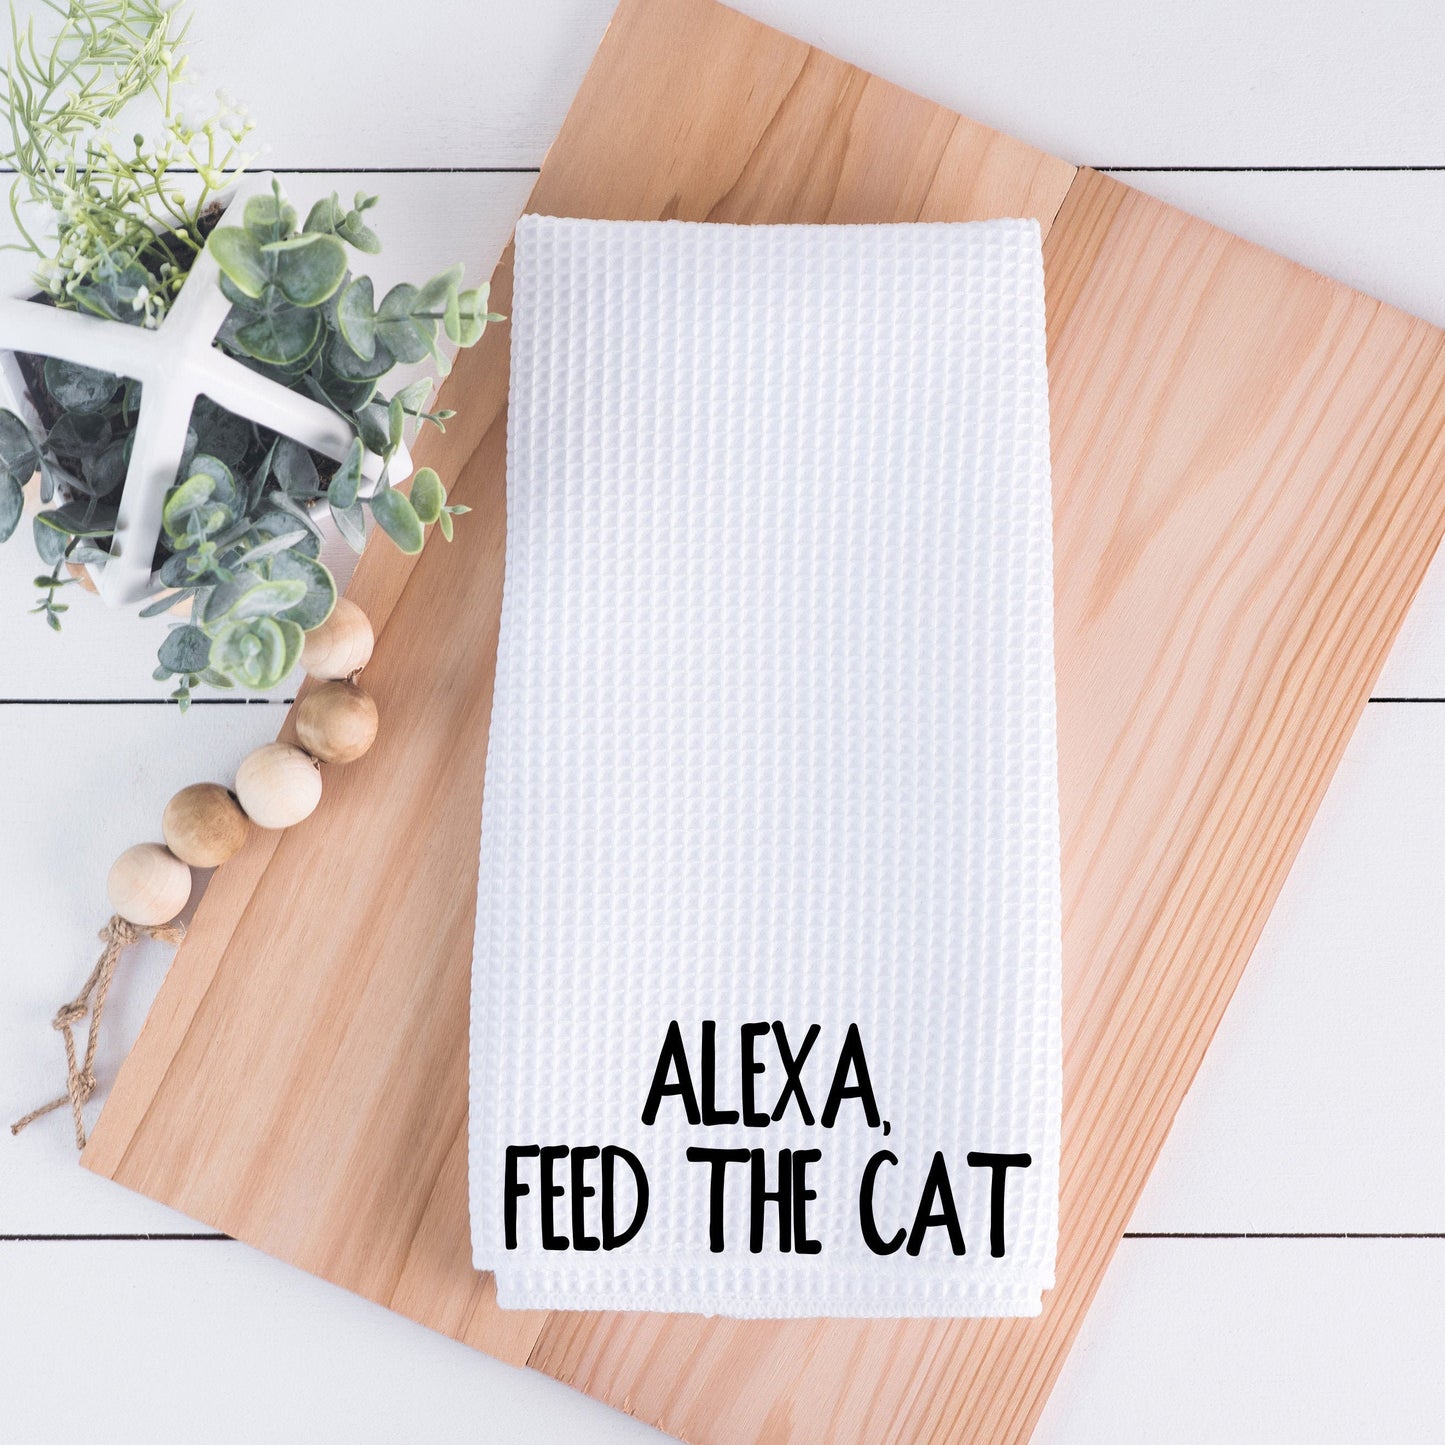 Alexa Feed The Cat Hand Towel